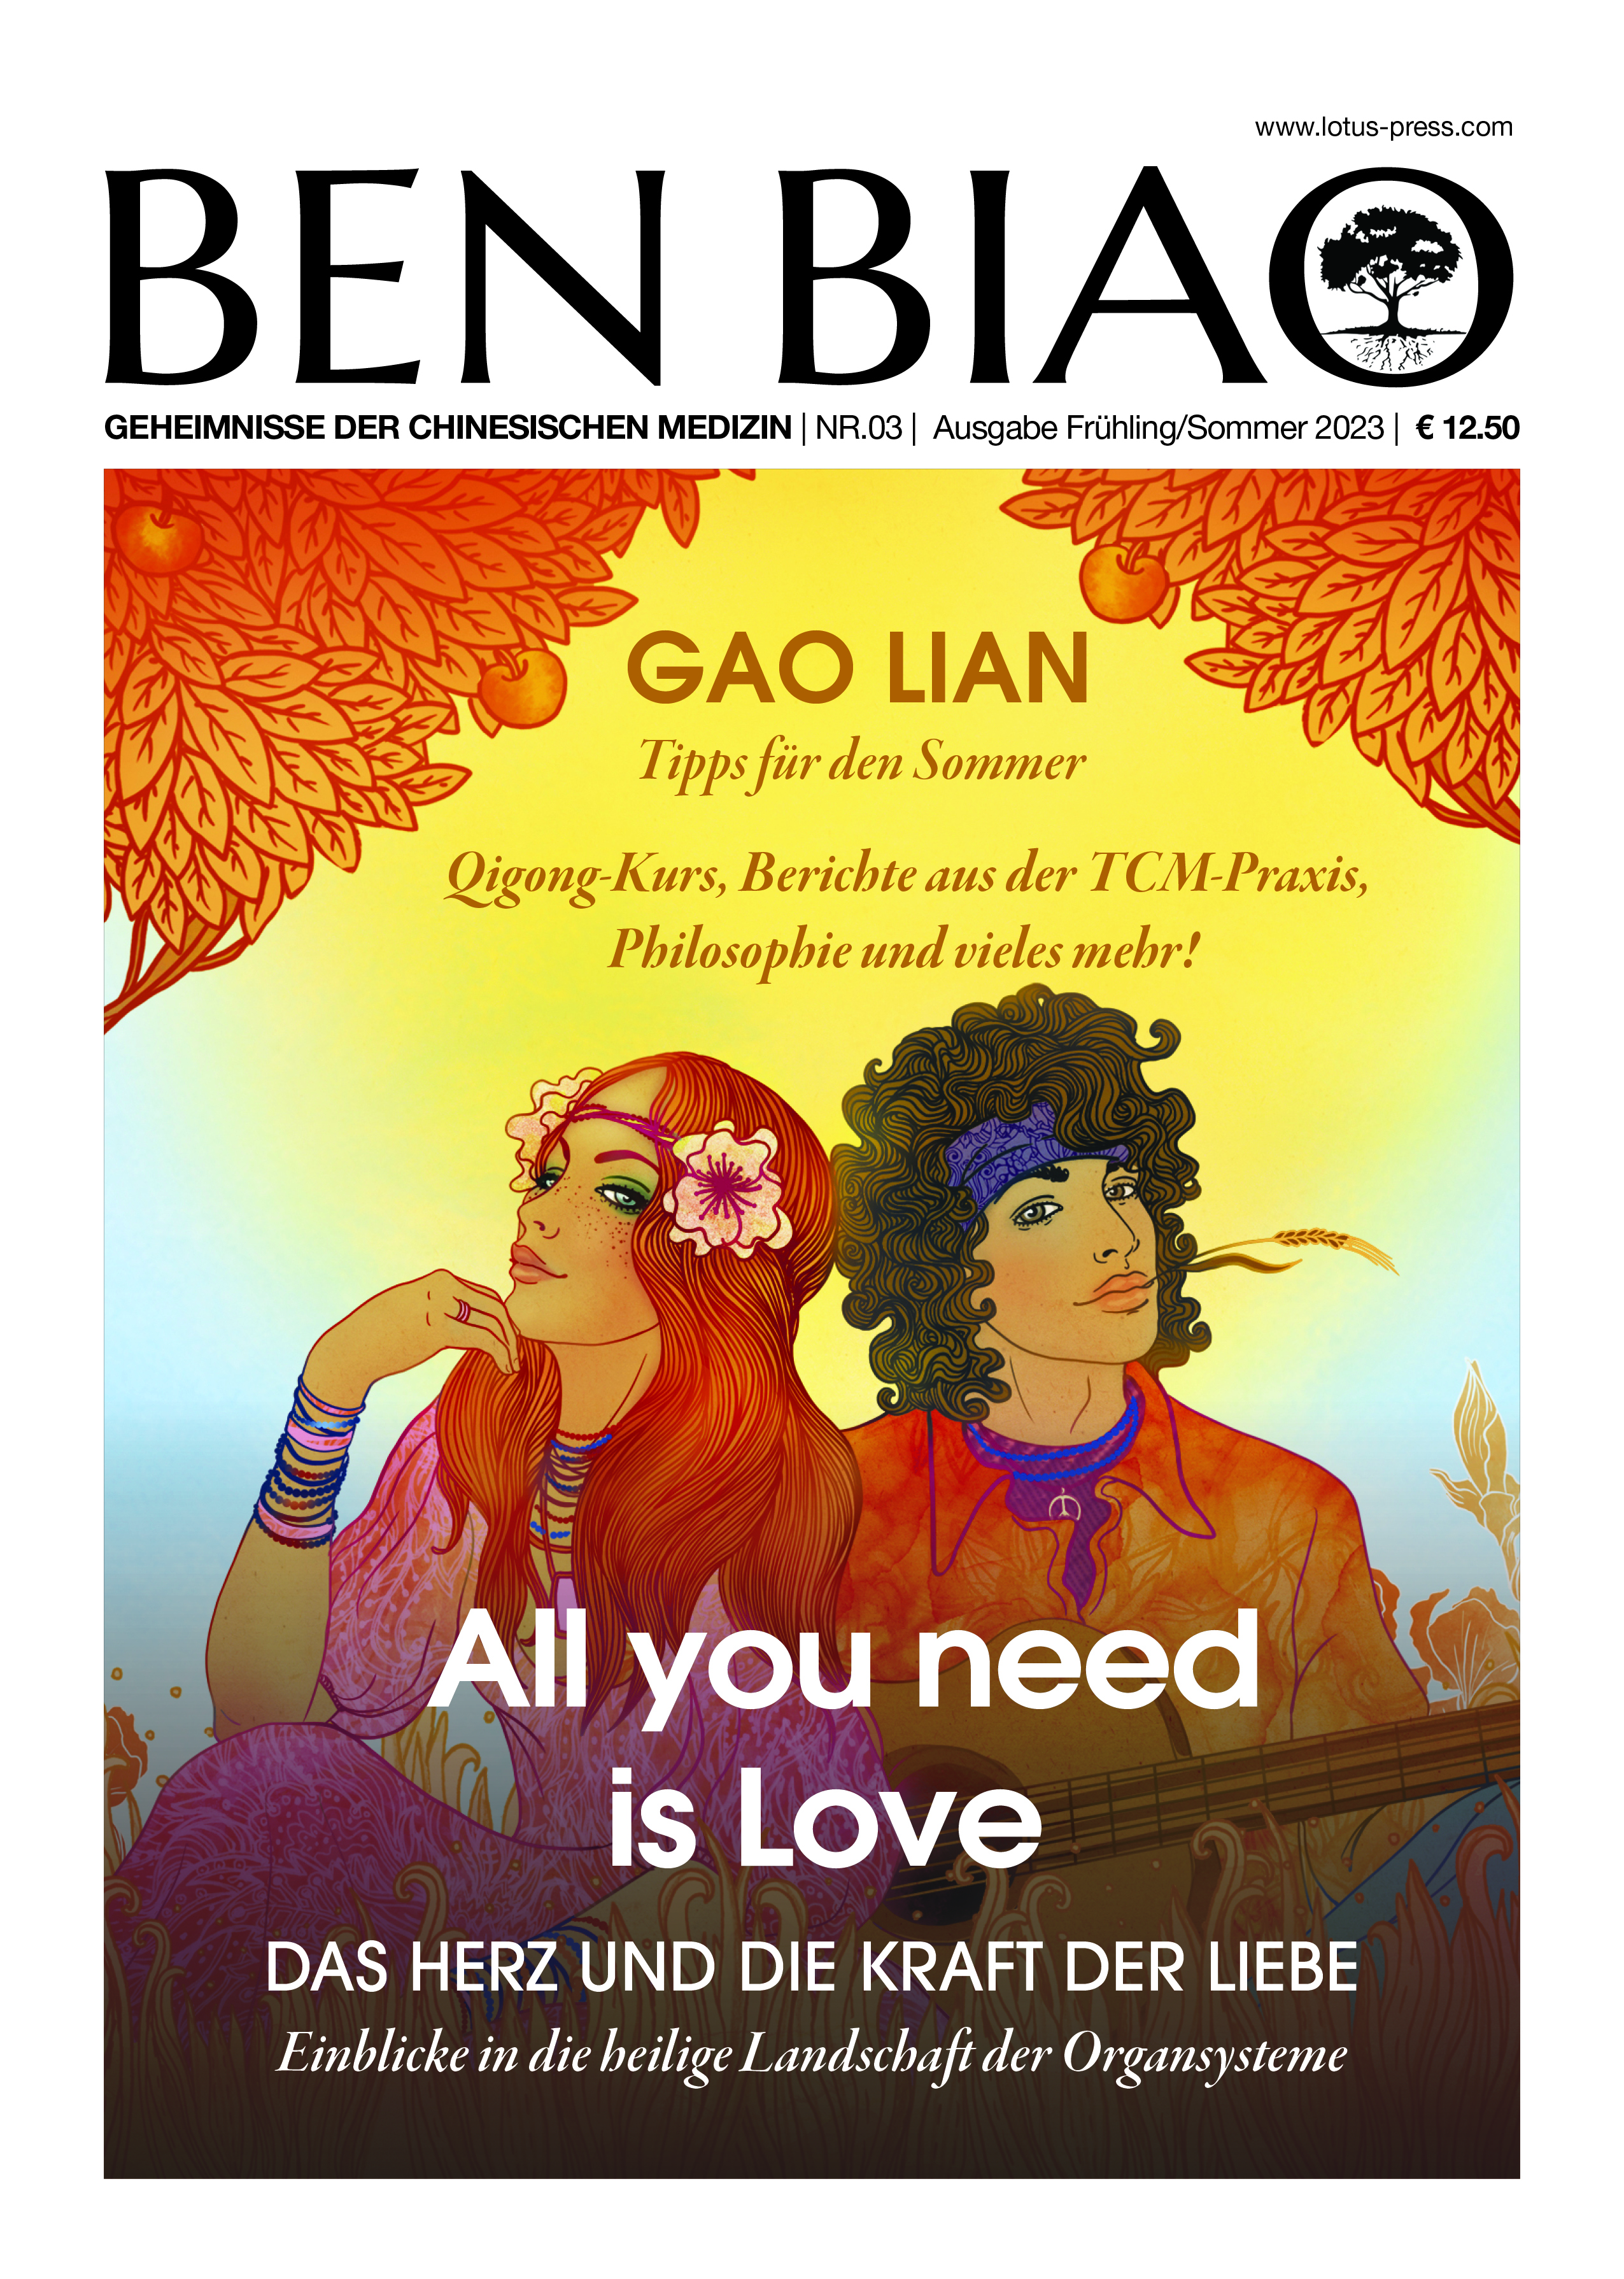 Ben Biao - Geheimnisse der Chinesischen Medizin